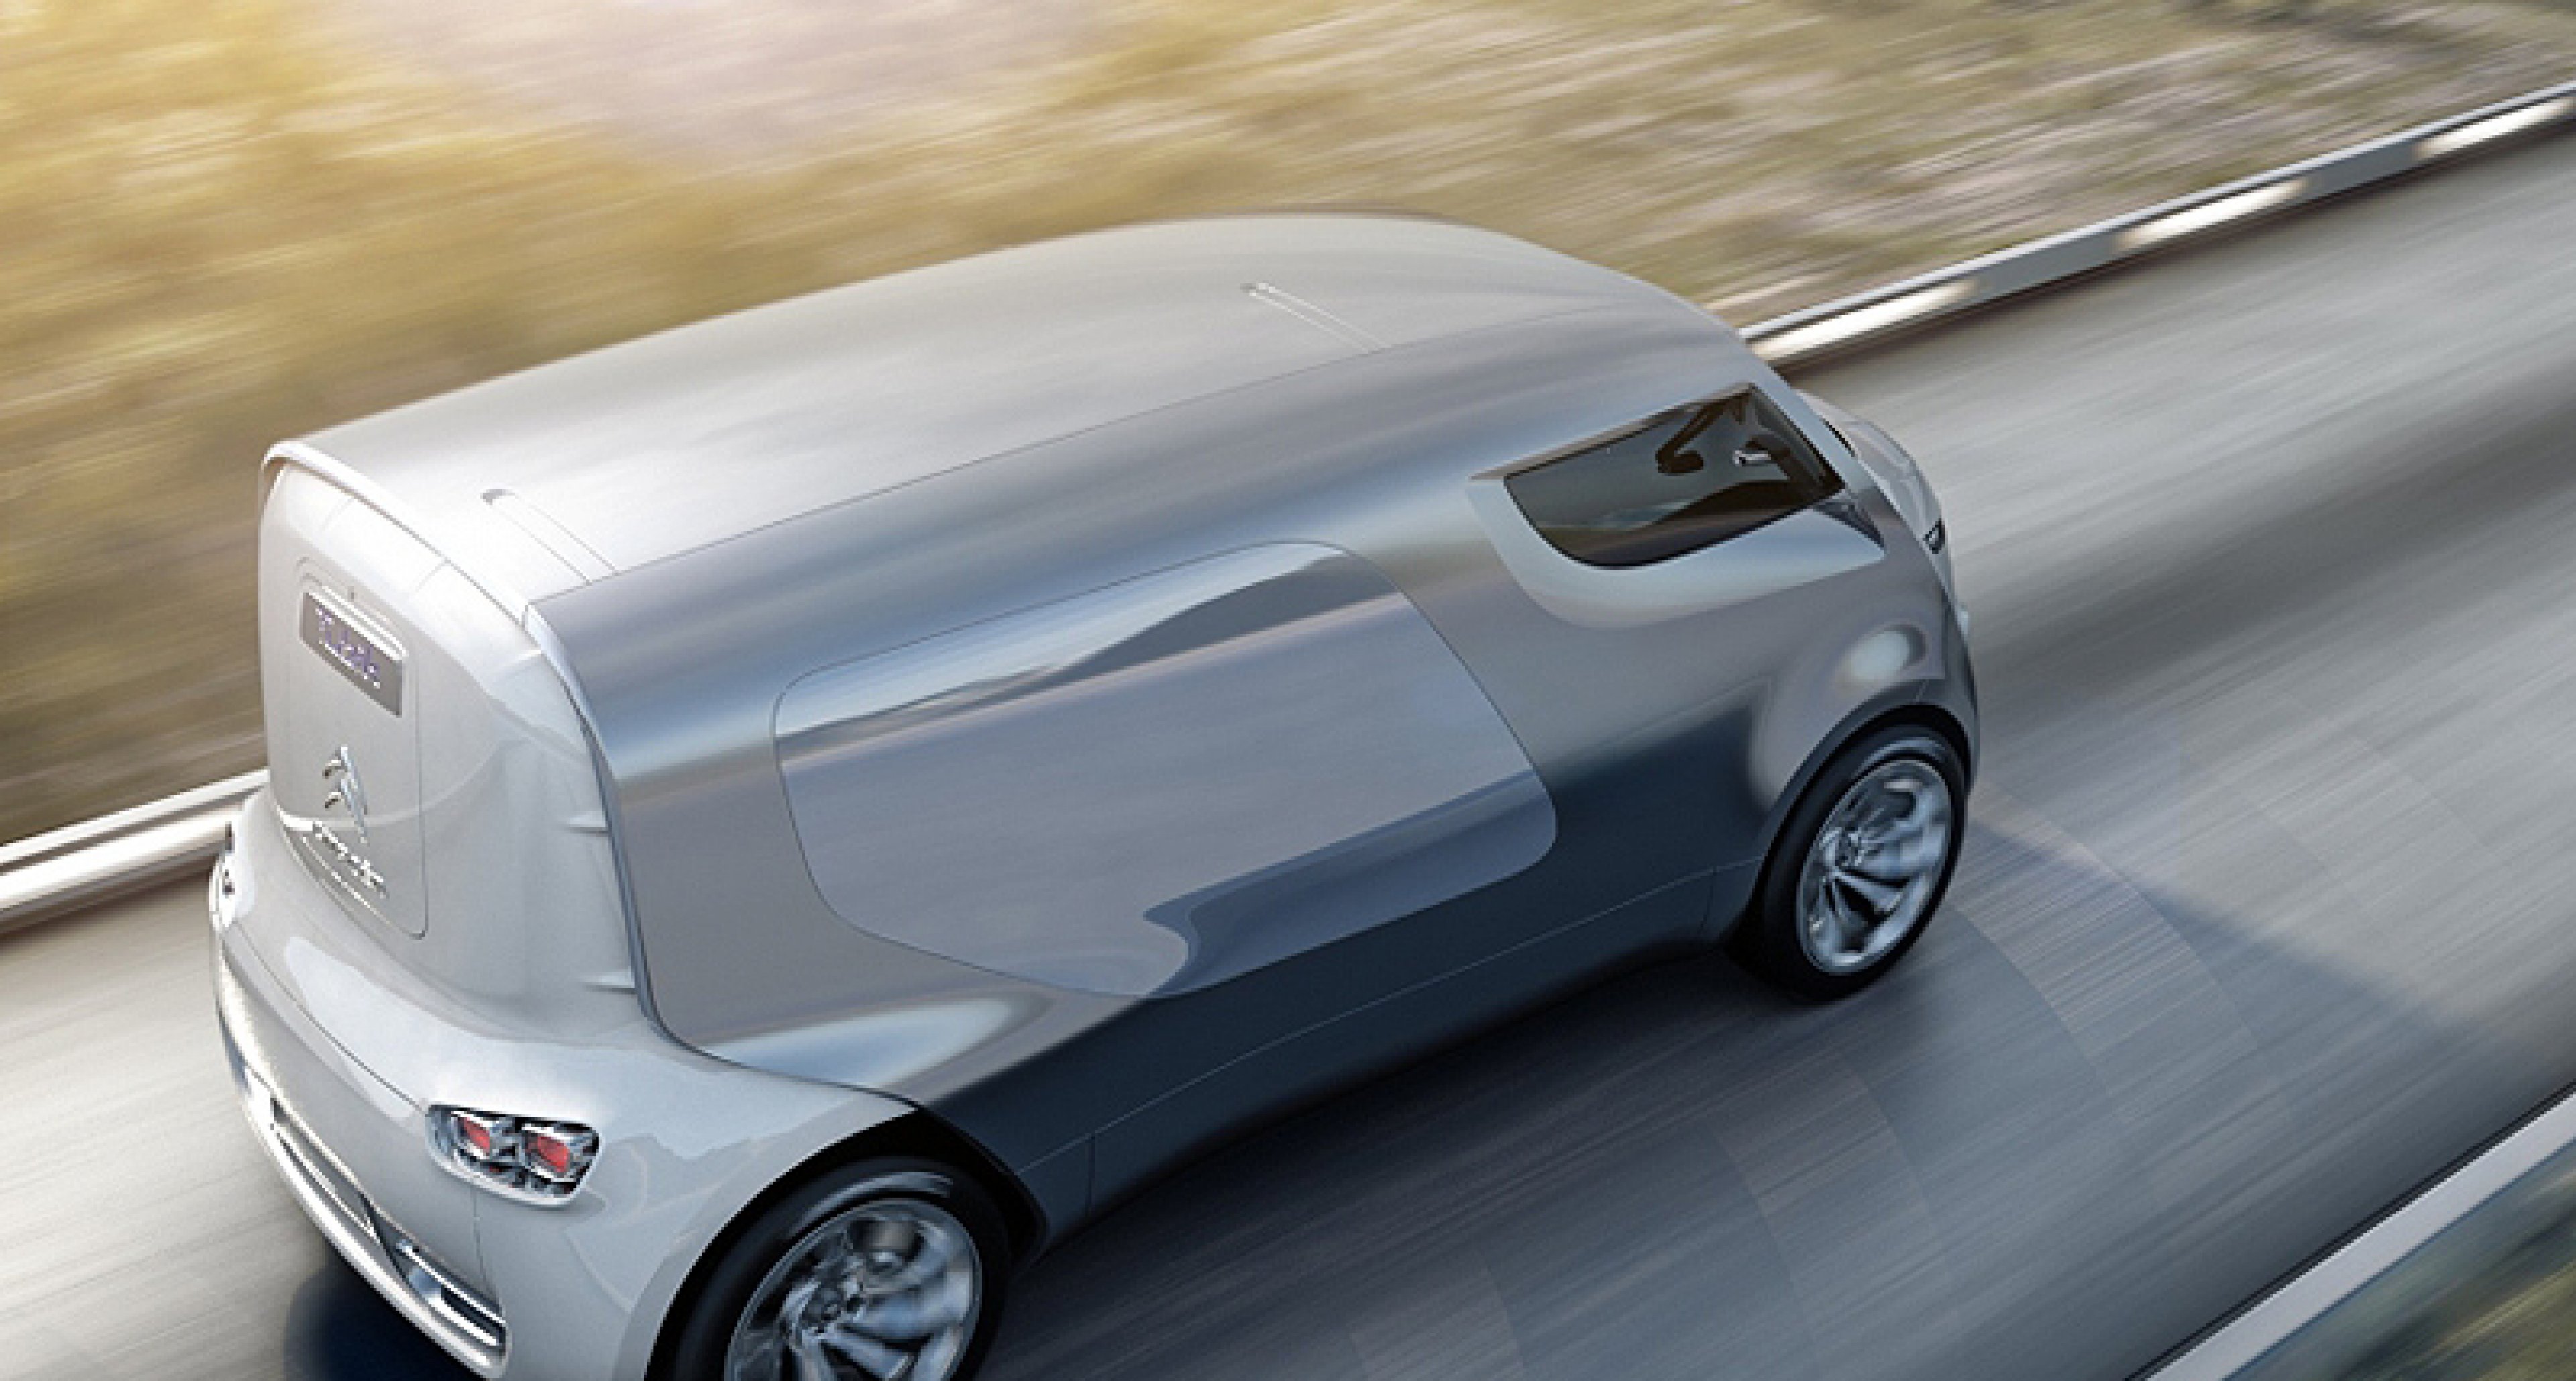 Citroën Tubik concept: Revival of the H-Van